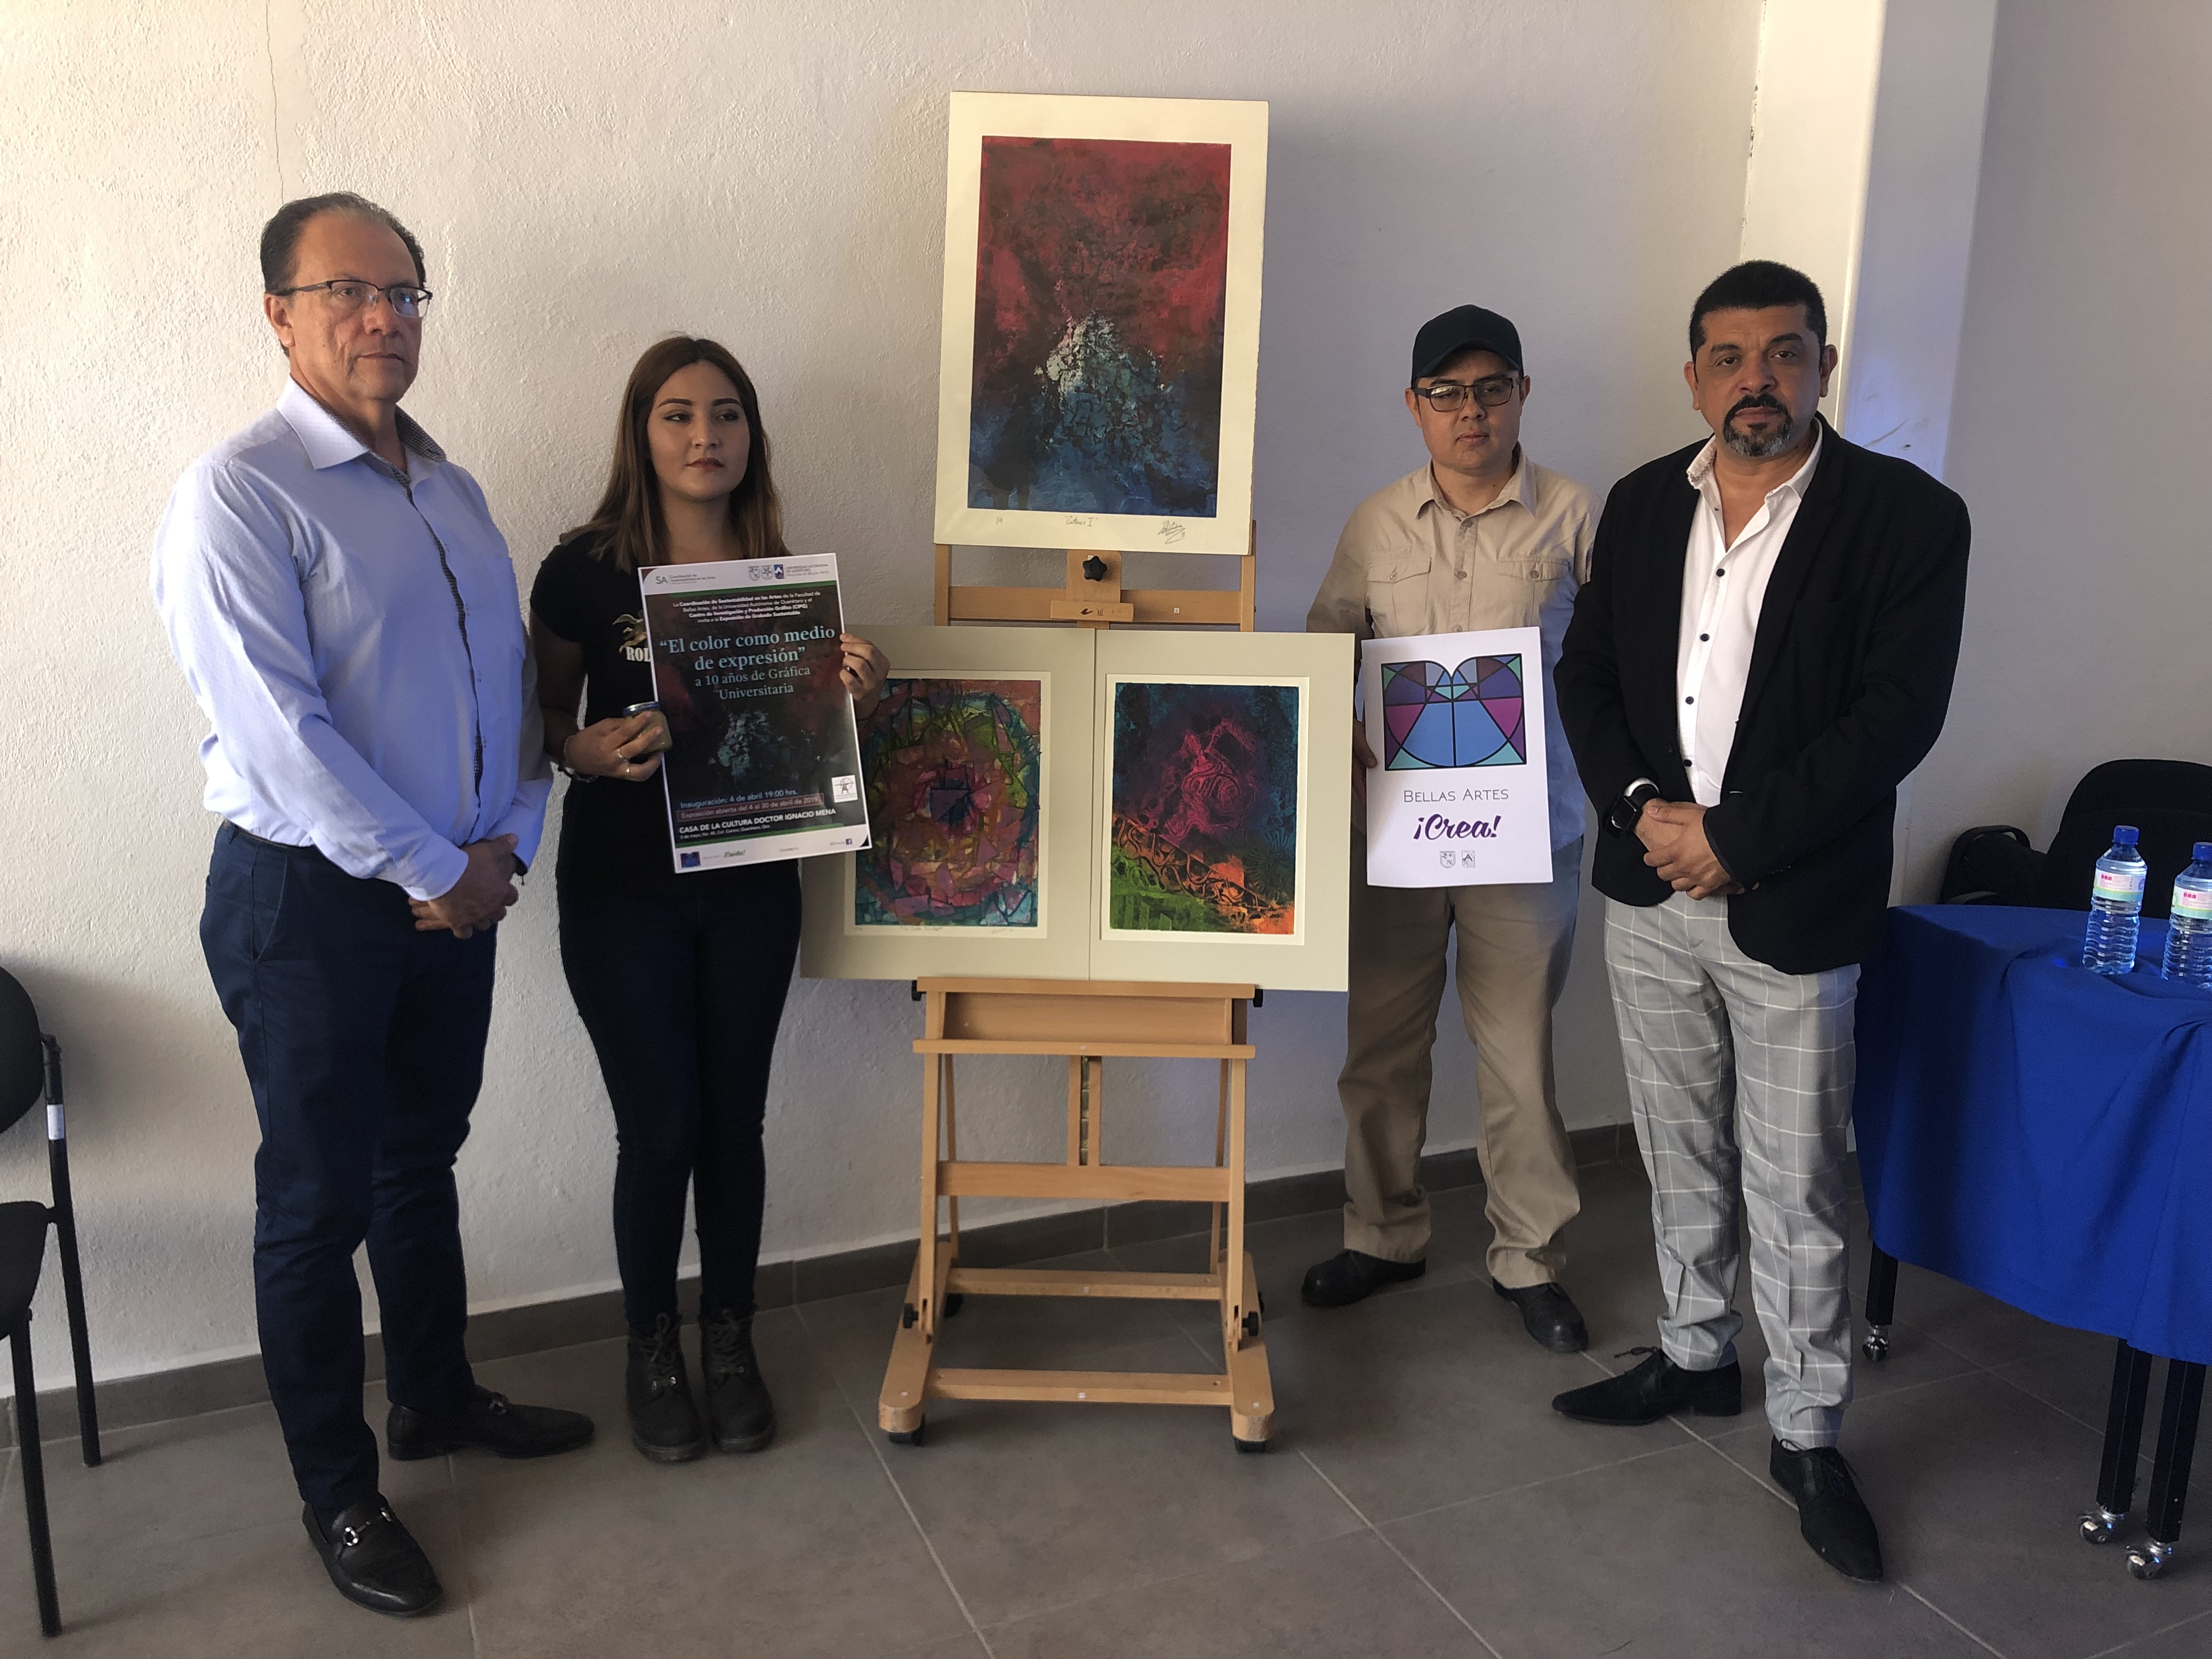  Facultad de Bellas Artes de la UAQ prepara exposición de grabado con tema ecológico